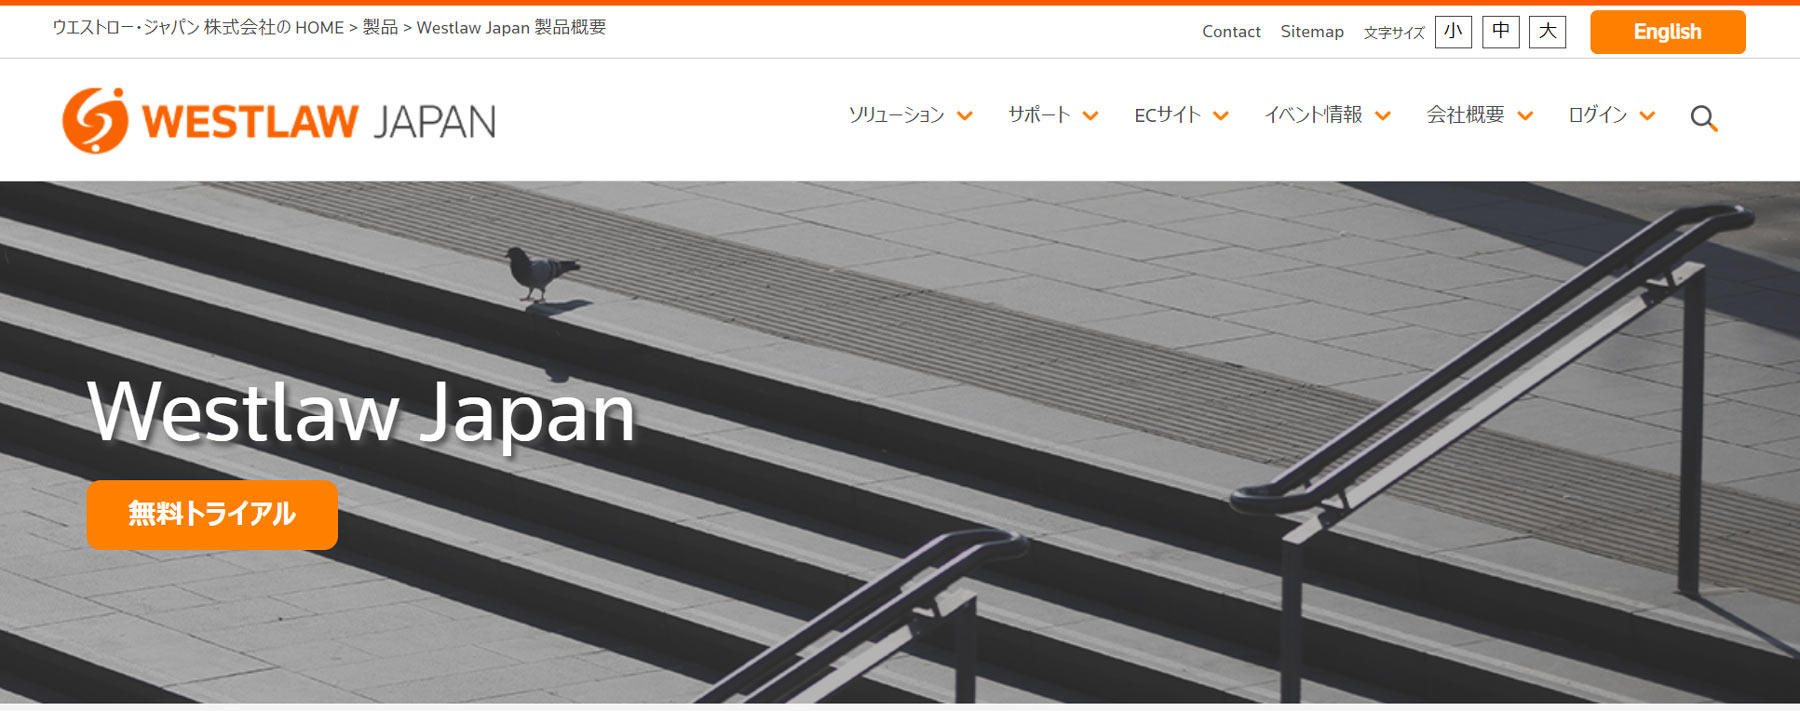 Westlaw Japan公式Webサイト